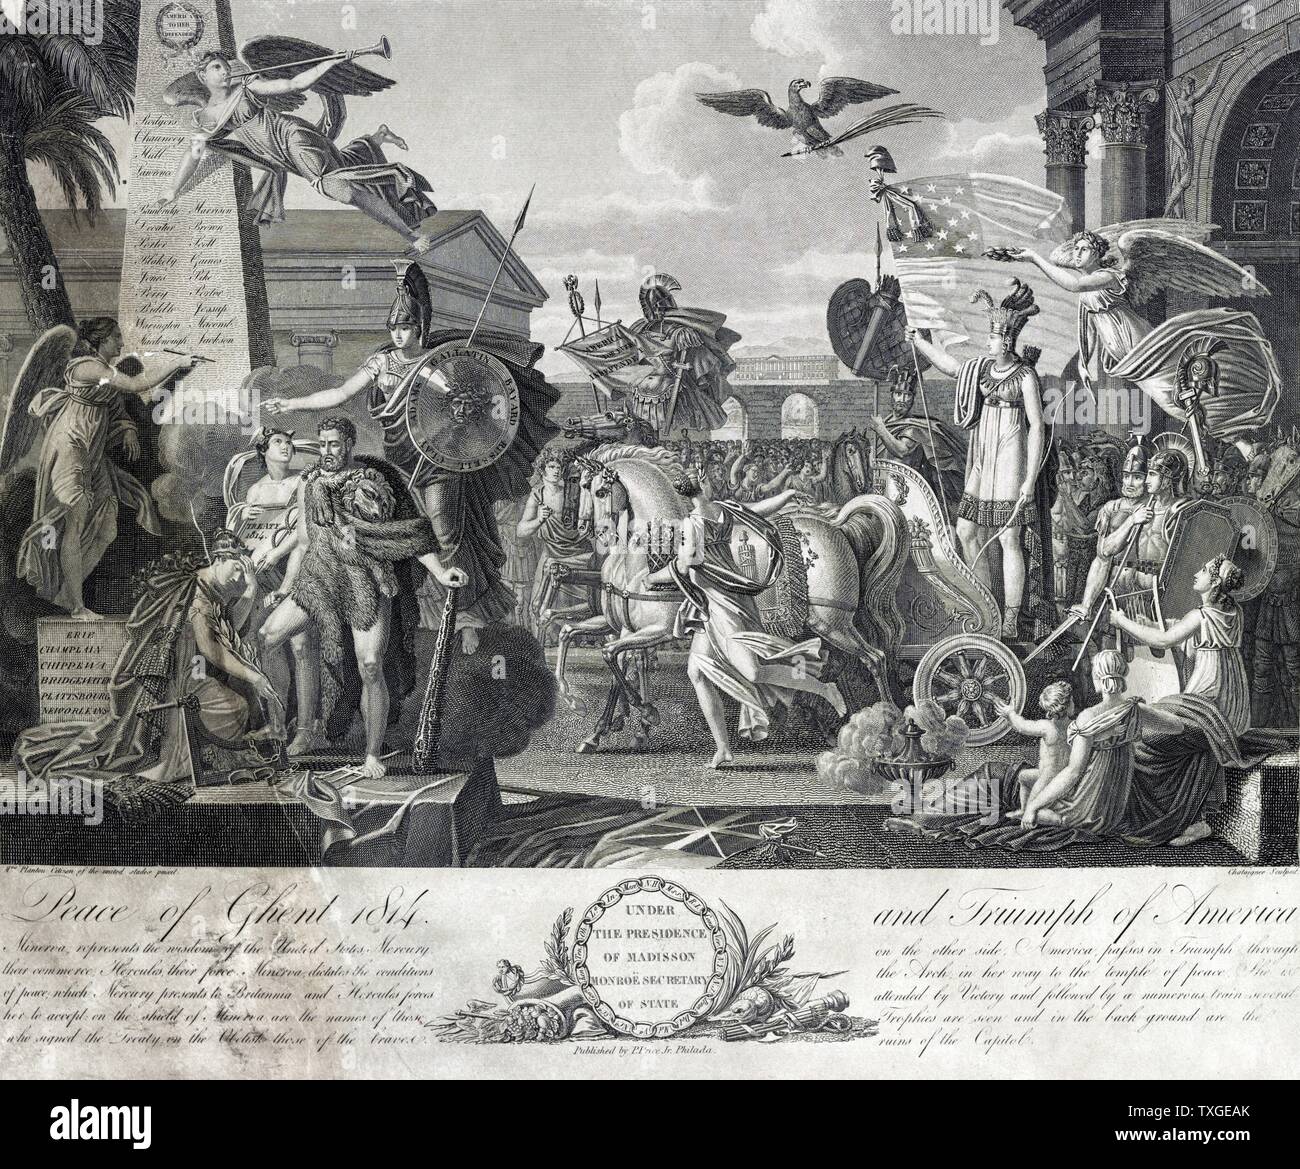 El Tratado de Gante, firmado el 24 de diciembre de 1814 en la ciudad de Gante, fue el tratado de paz que puso fin a la guerra de 1812 entre los Estados Unidos y Gran Bretaña. Foto de stock